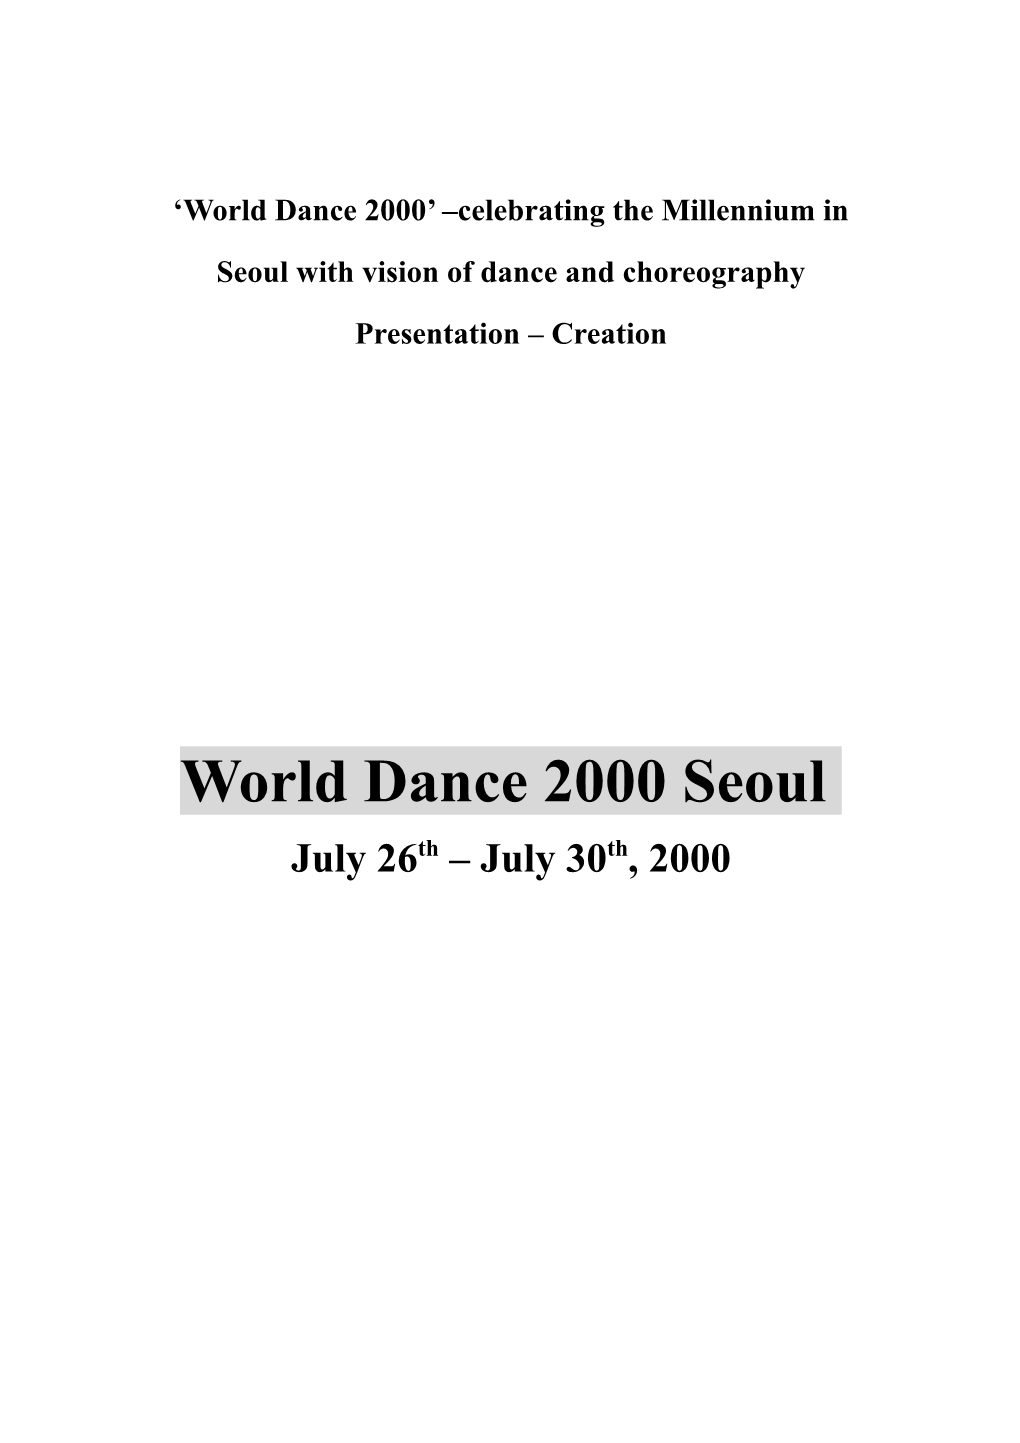 World Dance 2000 Seoul